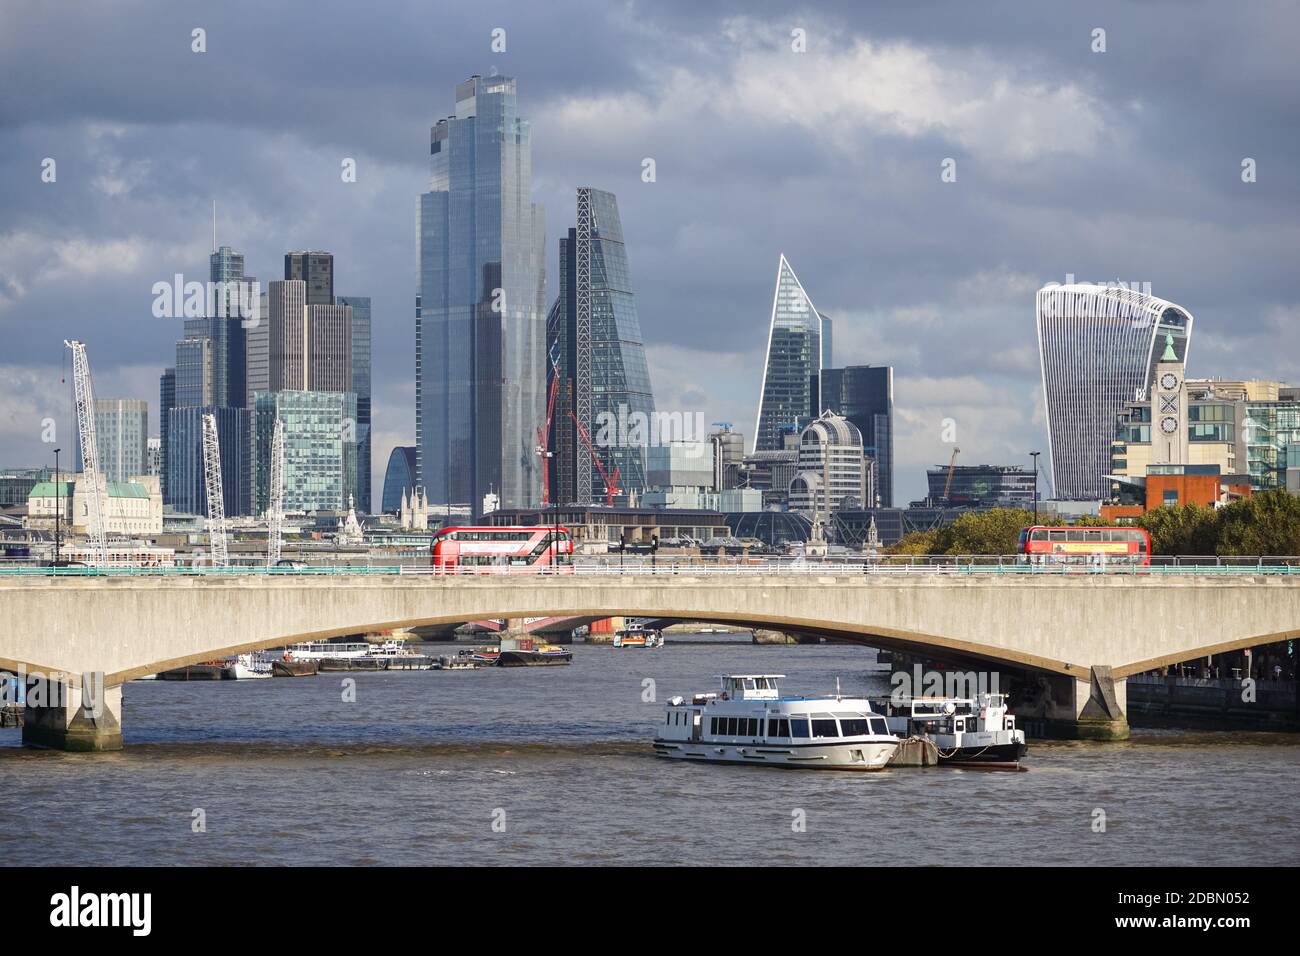 Waterloo Bridge avec vue sur la ville de Londres en arrière-plan, Londres Angleterre Royaume-Uni Banque D'Images